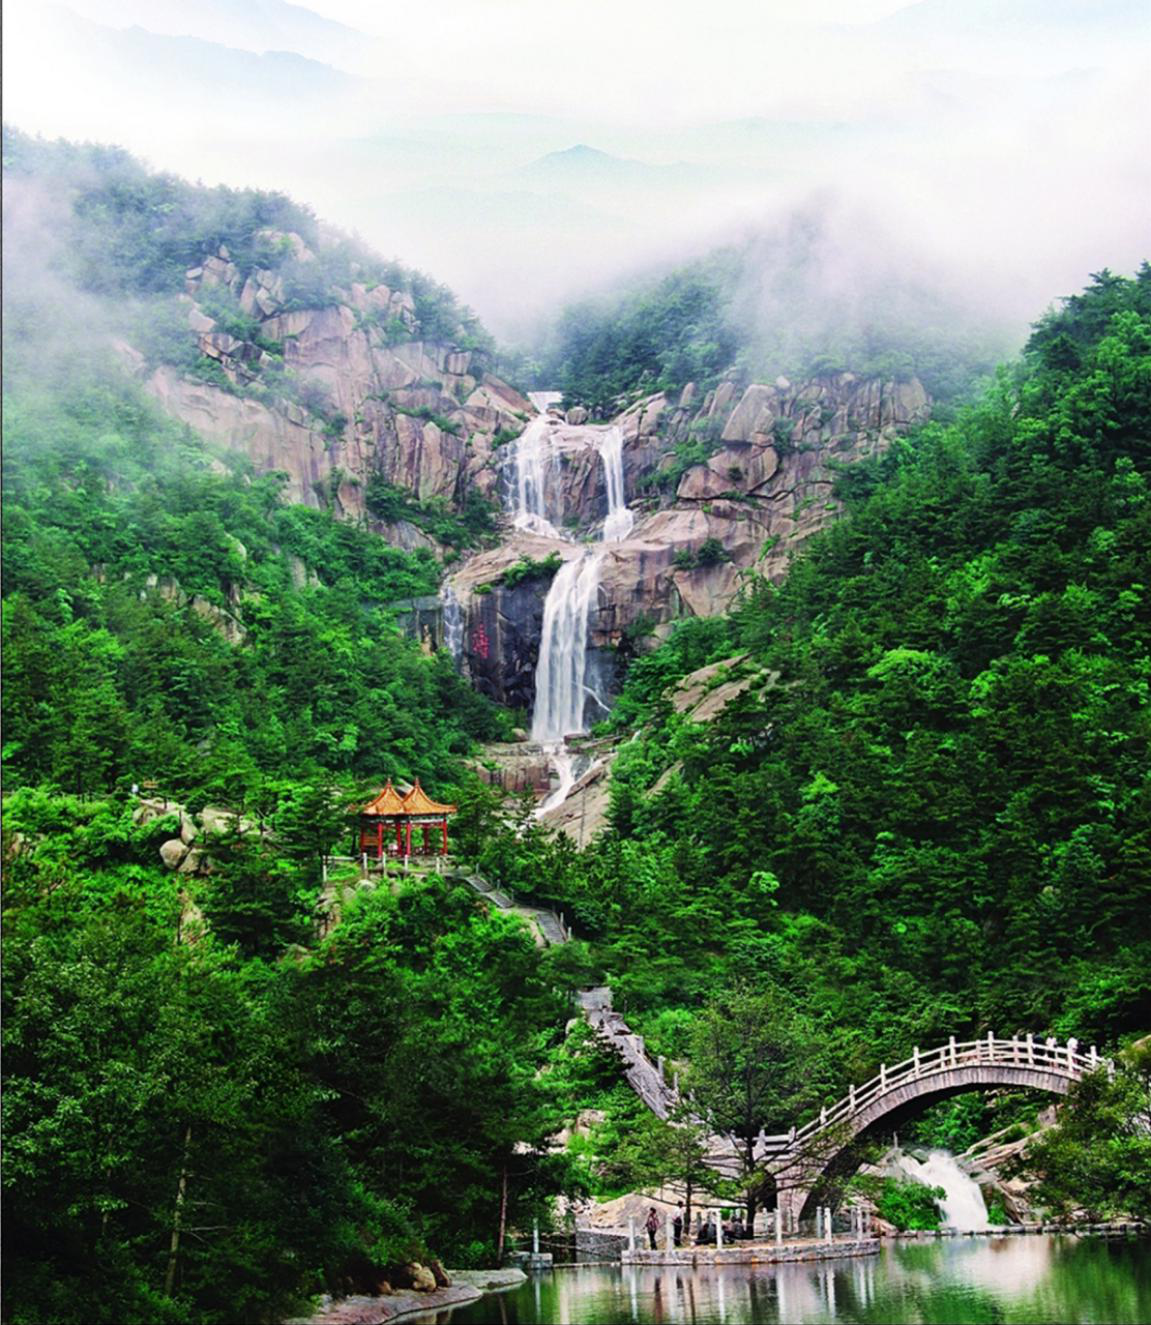 到沂蒙山云蒙景区享受一场世界健美冠军都在推荐的"森林浴"